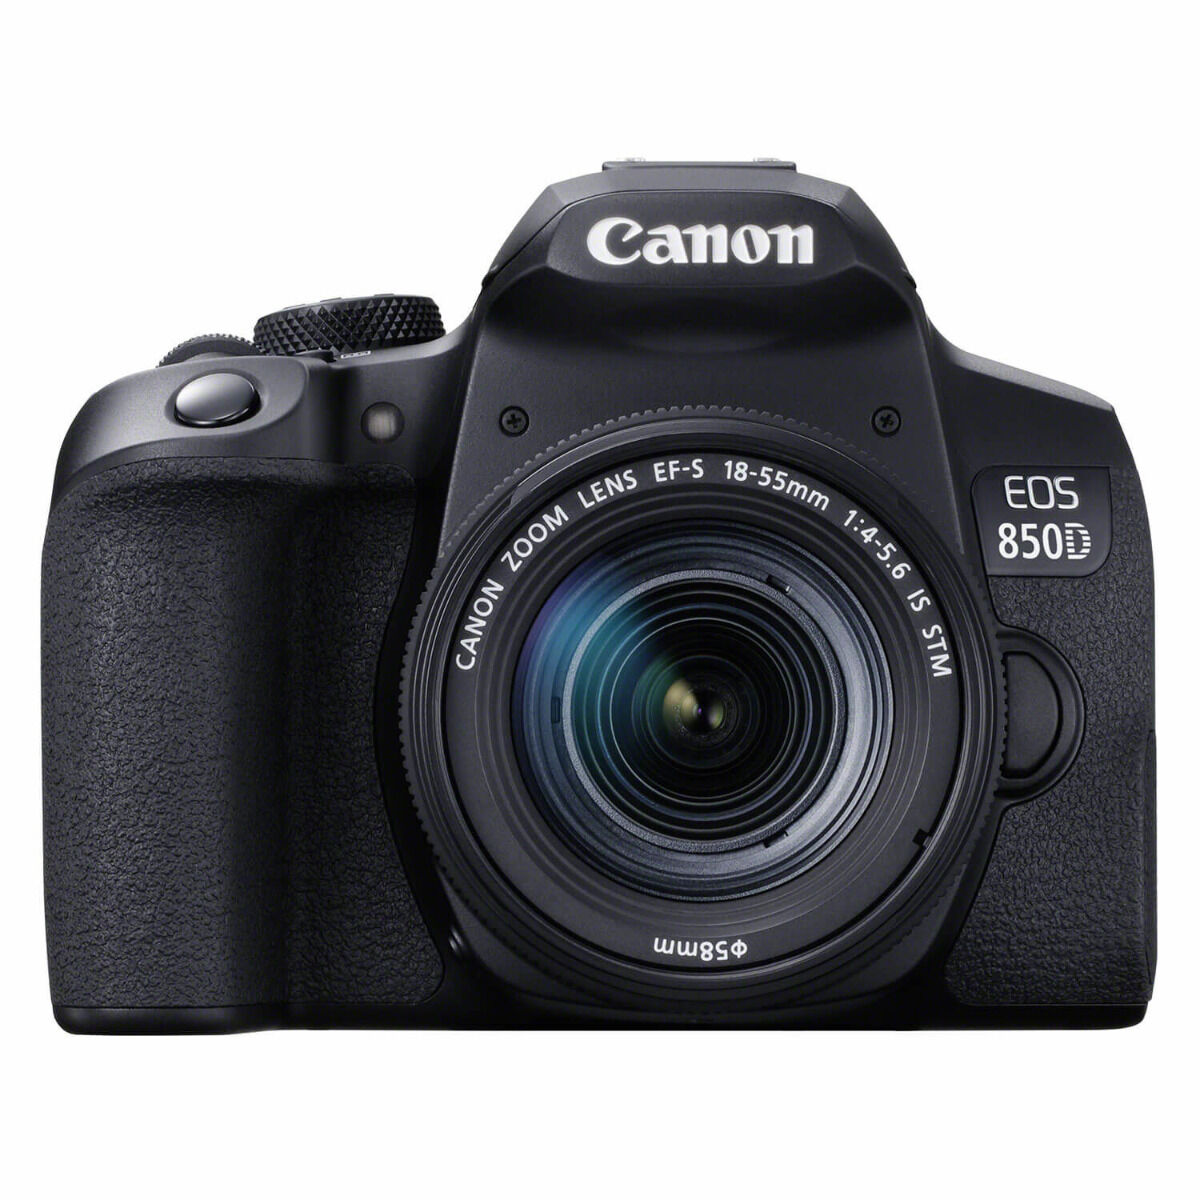 Canon EOS 850D DSLR + 18-55 mm f / 4.0-5.6 IS STM - Garanzia Europa 2 anni - (In magazzino)